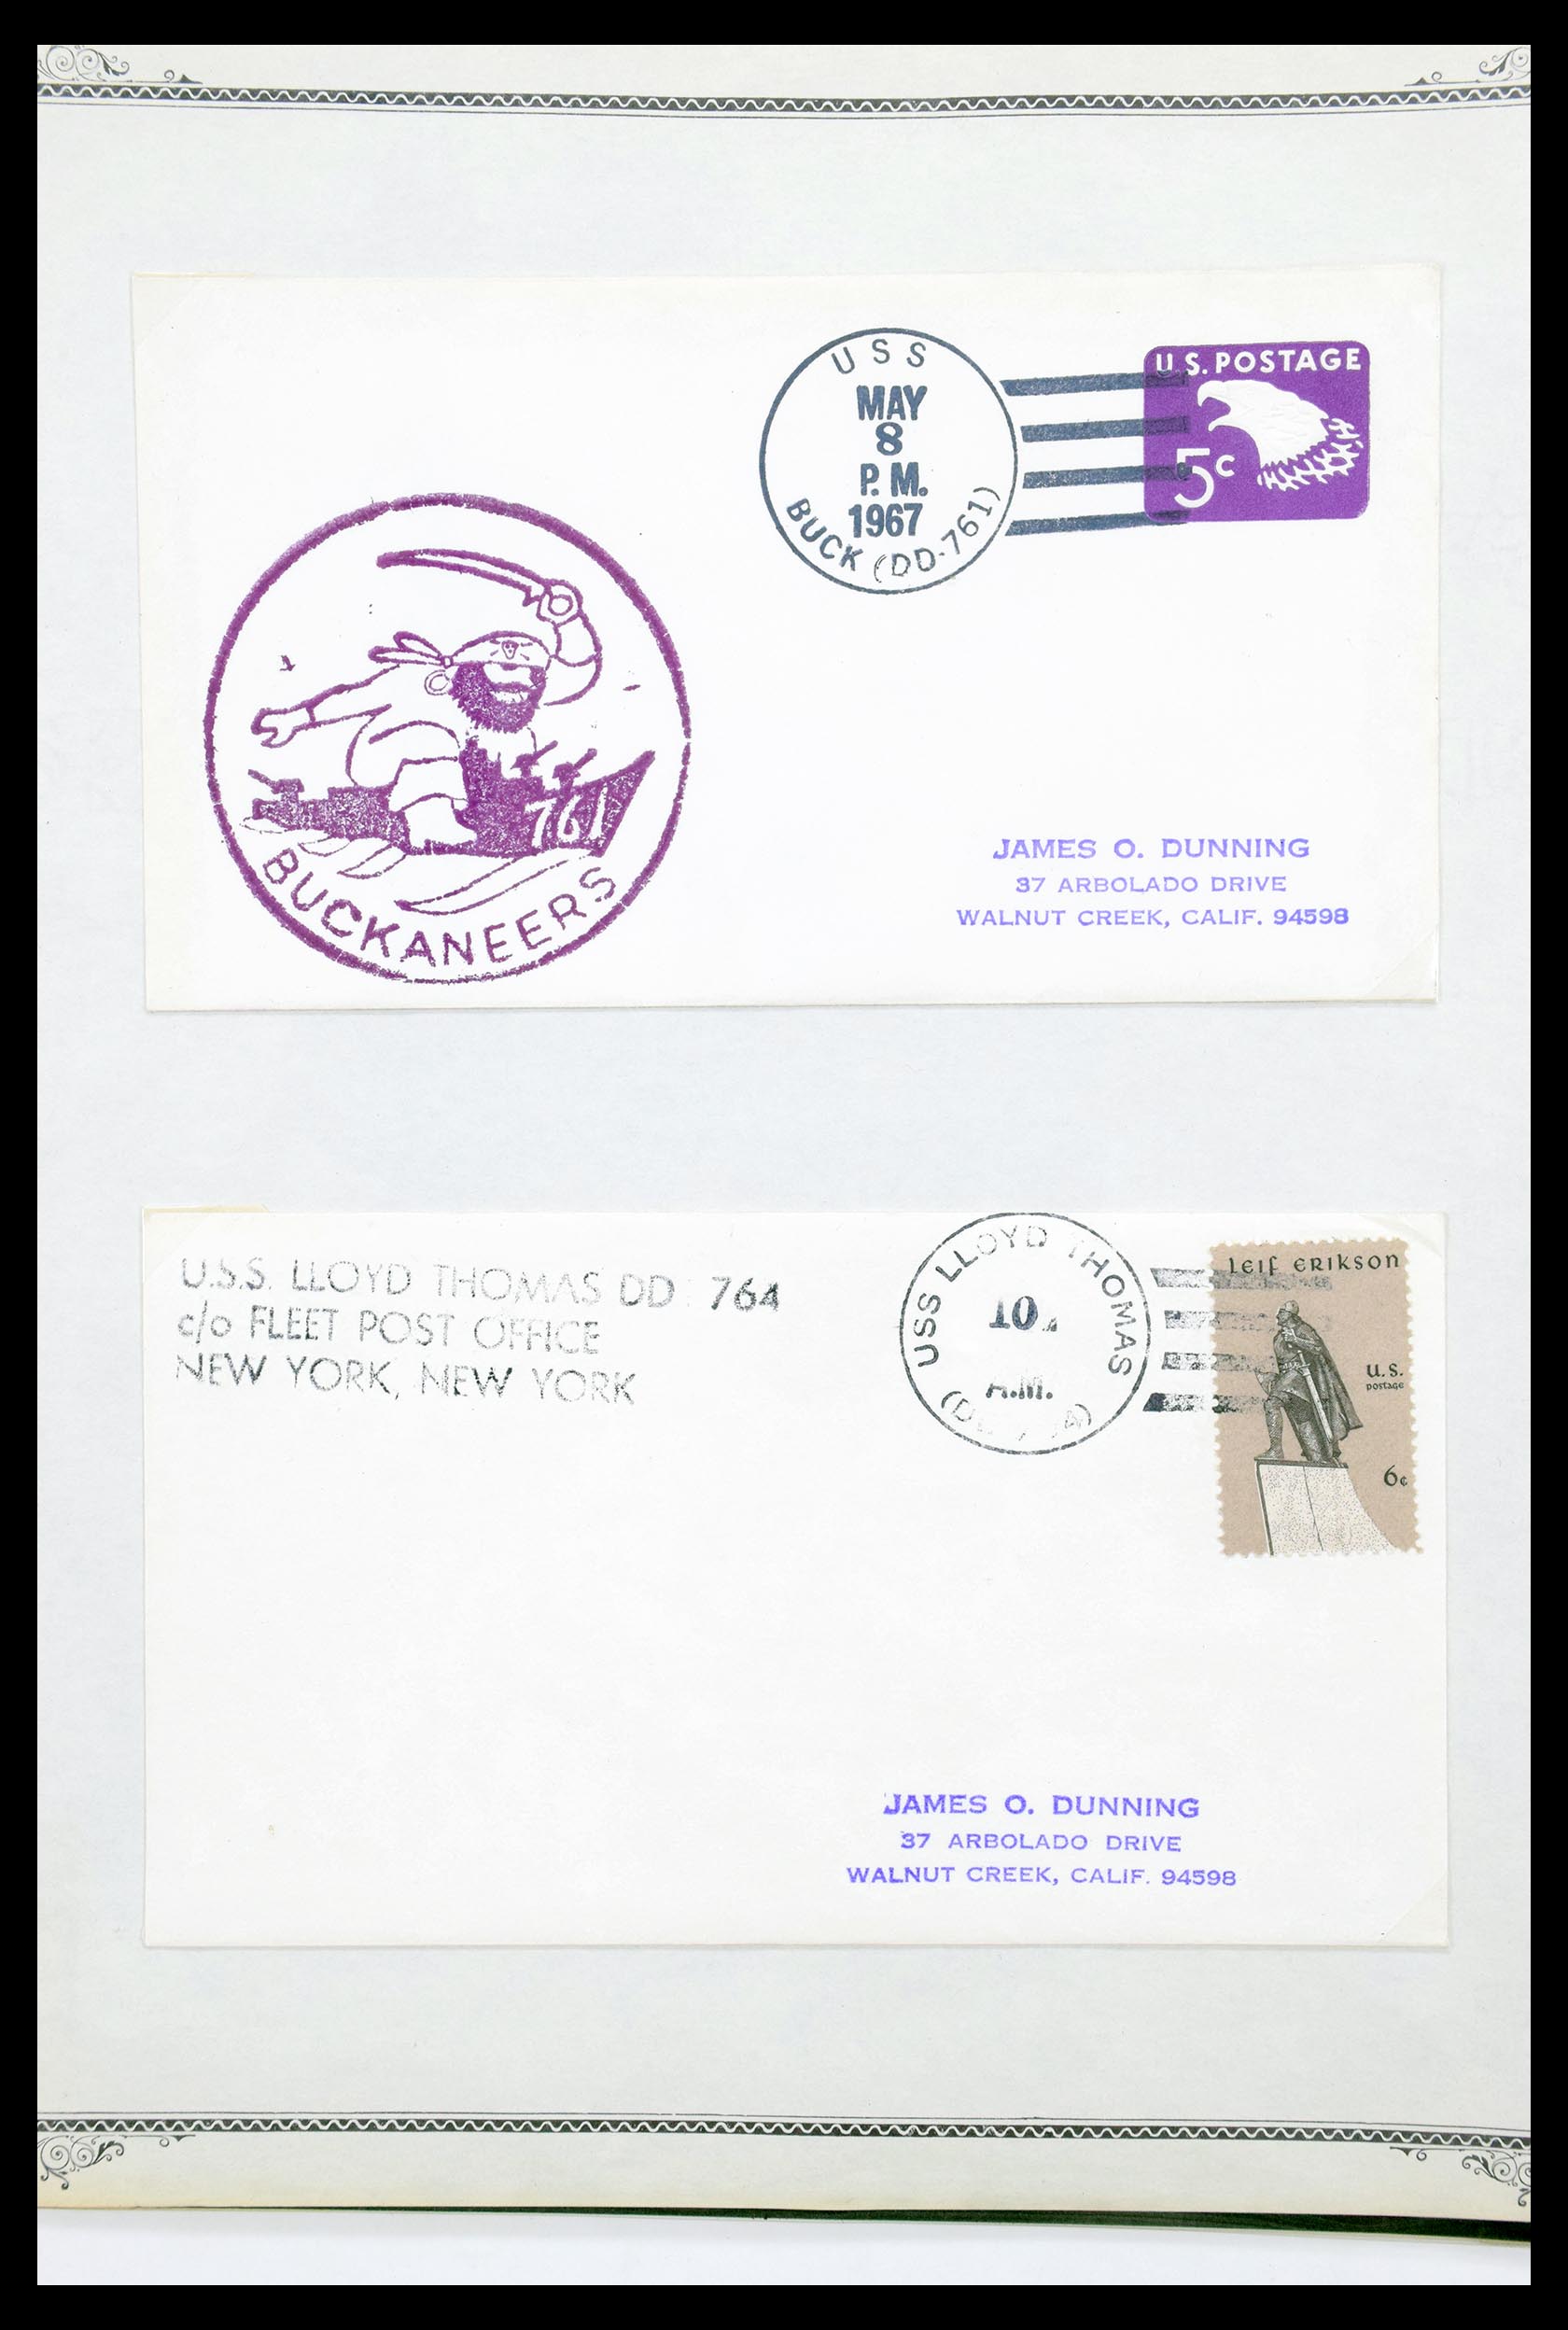 30341 038 - 30341 USA scheepspost brieven 1930-1970.